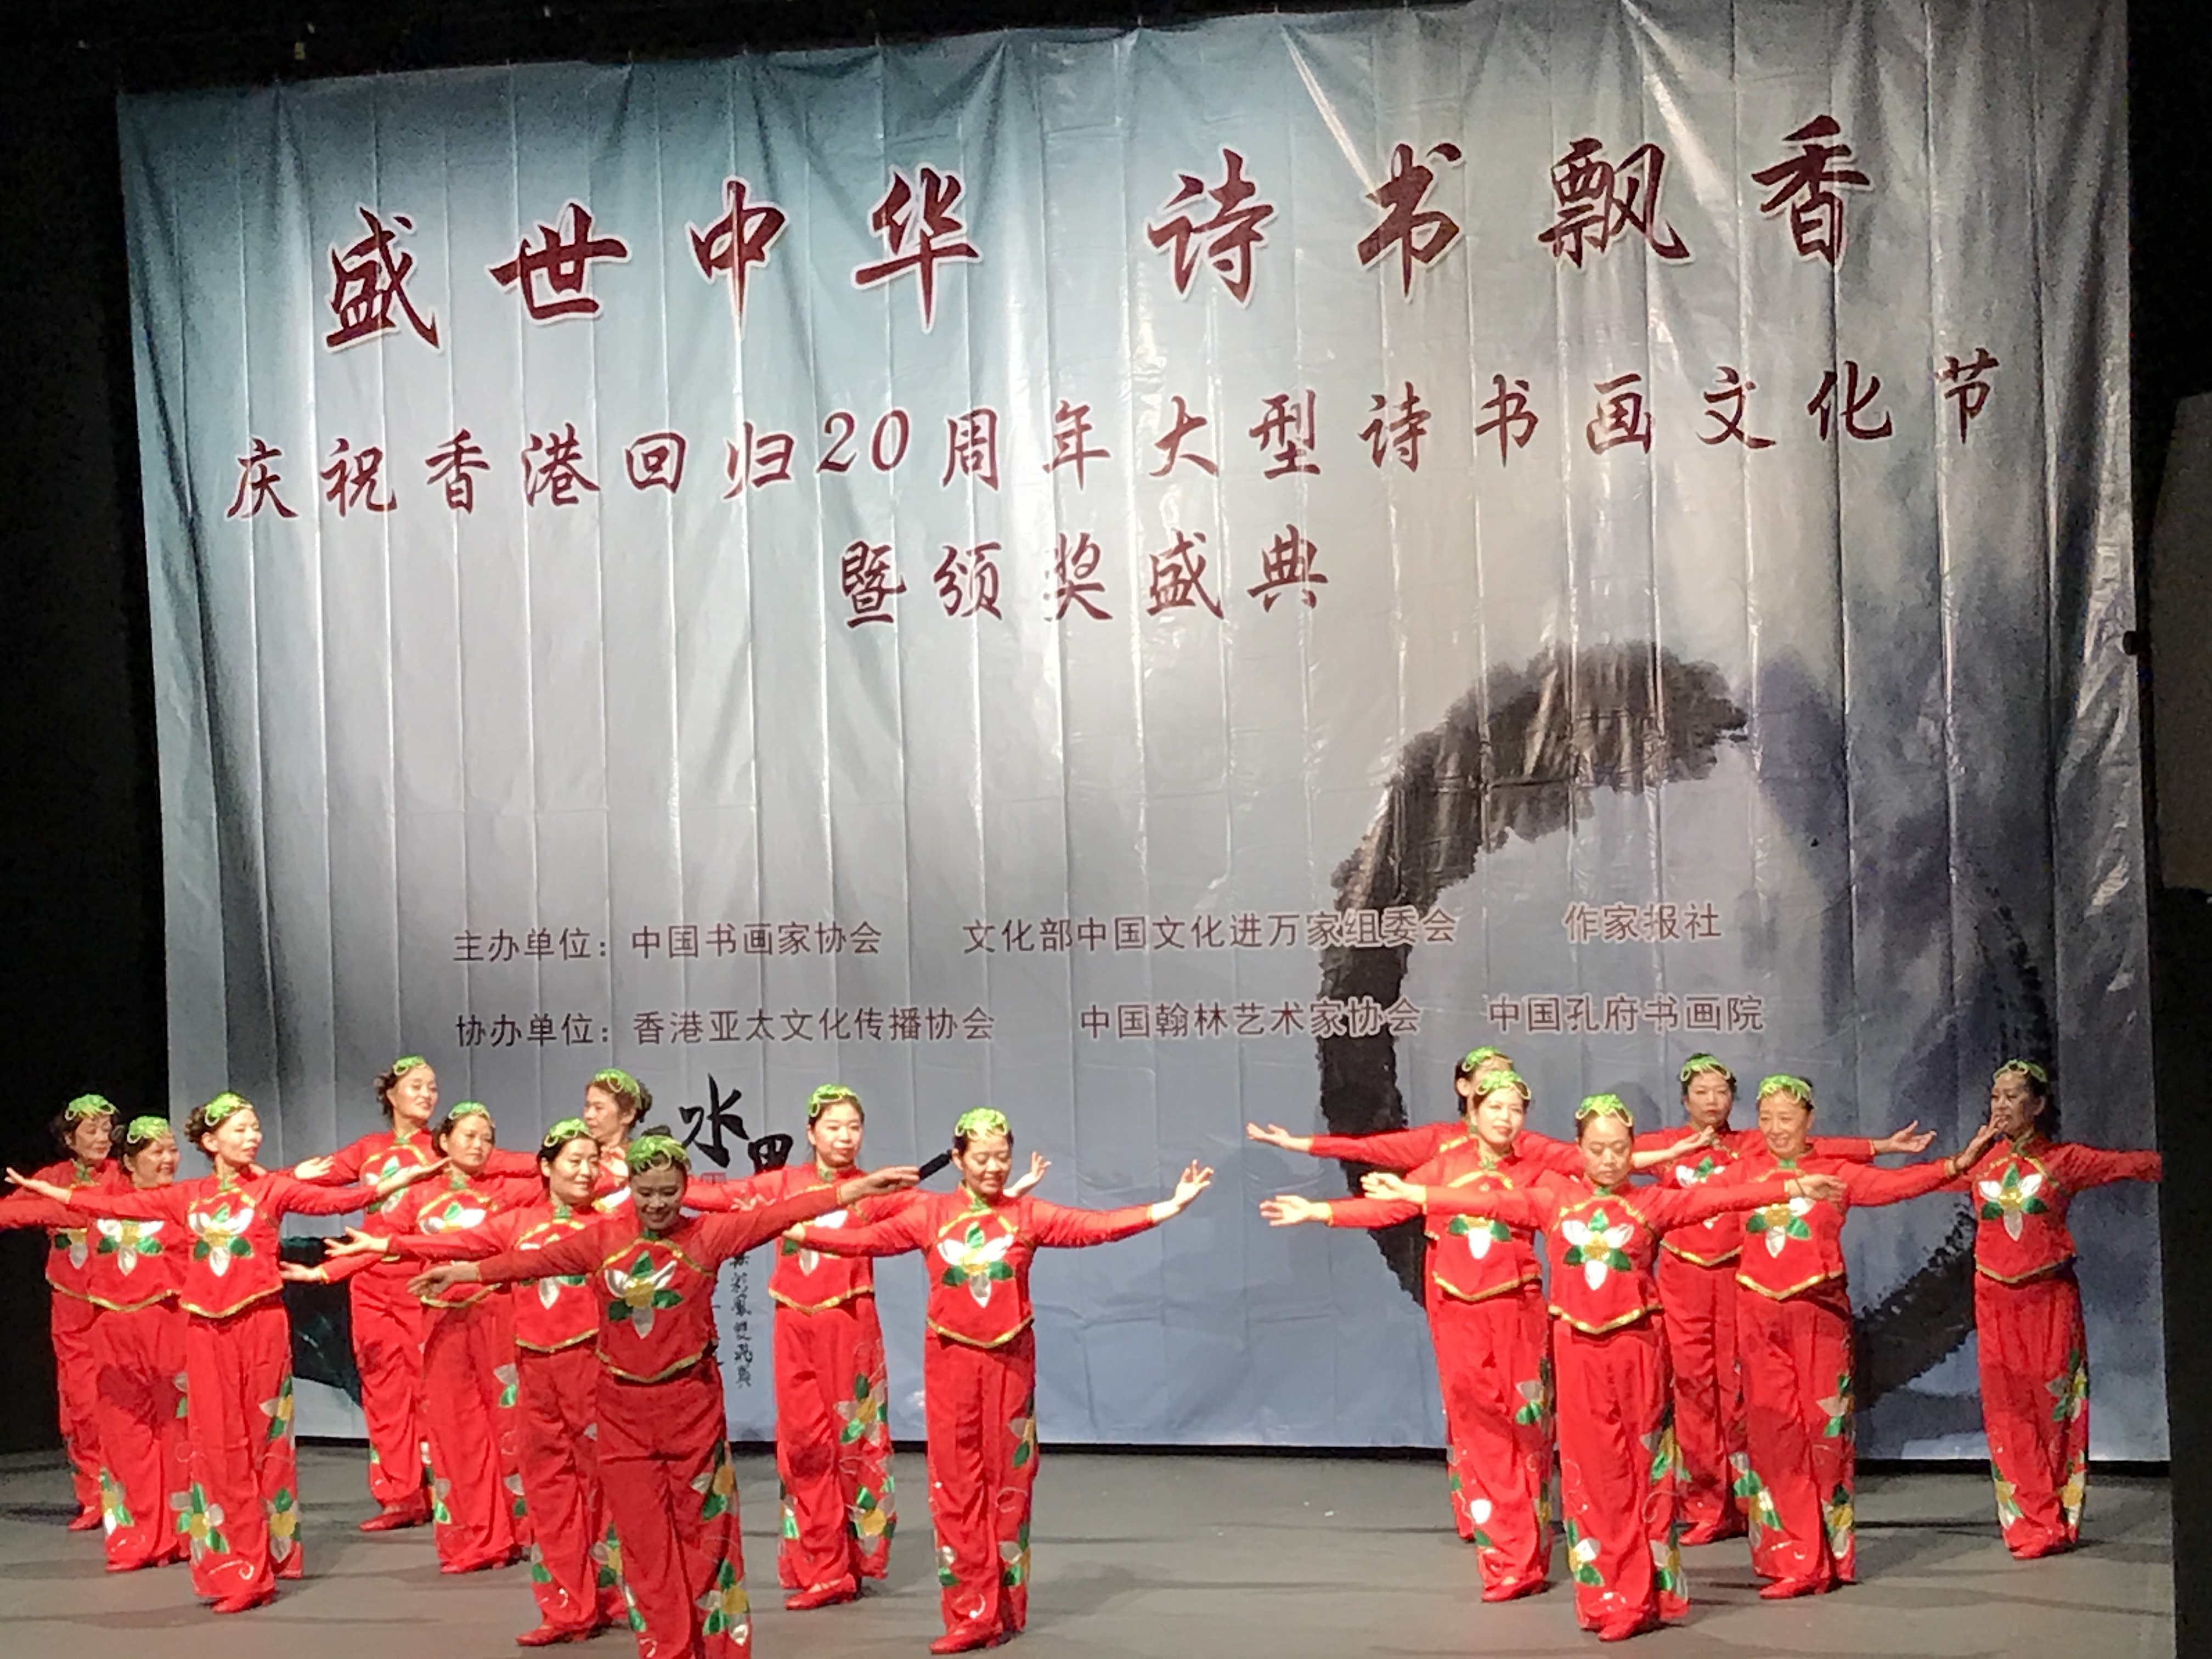 盛世中华 诗书飘香 贺香港回归20周年大型诗书画采风文化节暨颁奖盛典在港举行